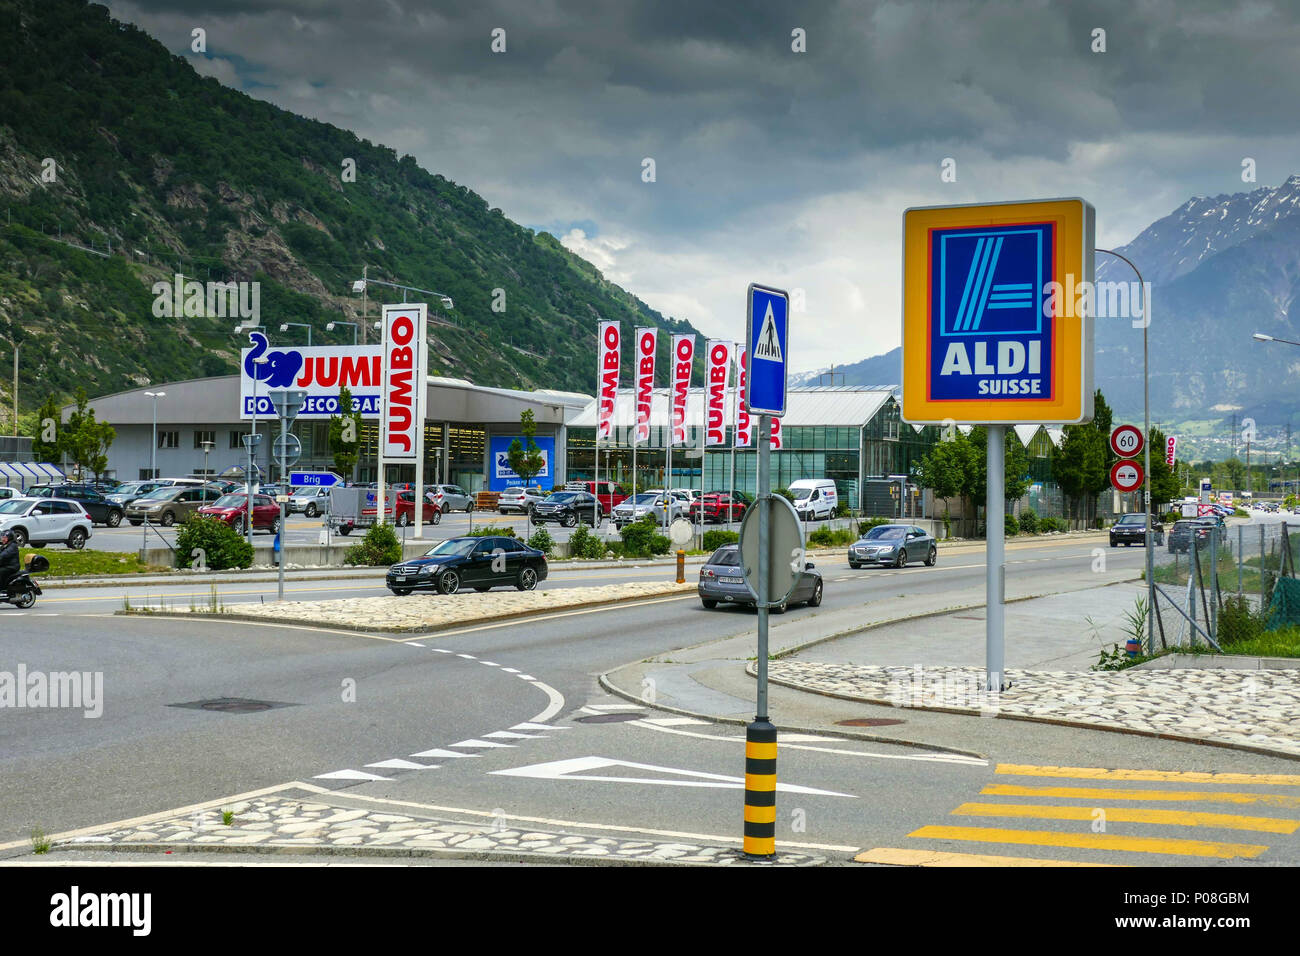 Aldi Suisse und Jumbo Geschäfte, günstige Geschäfte, Visp, Schweiz  Stockfotografie - Alamy